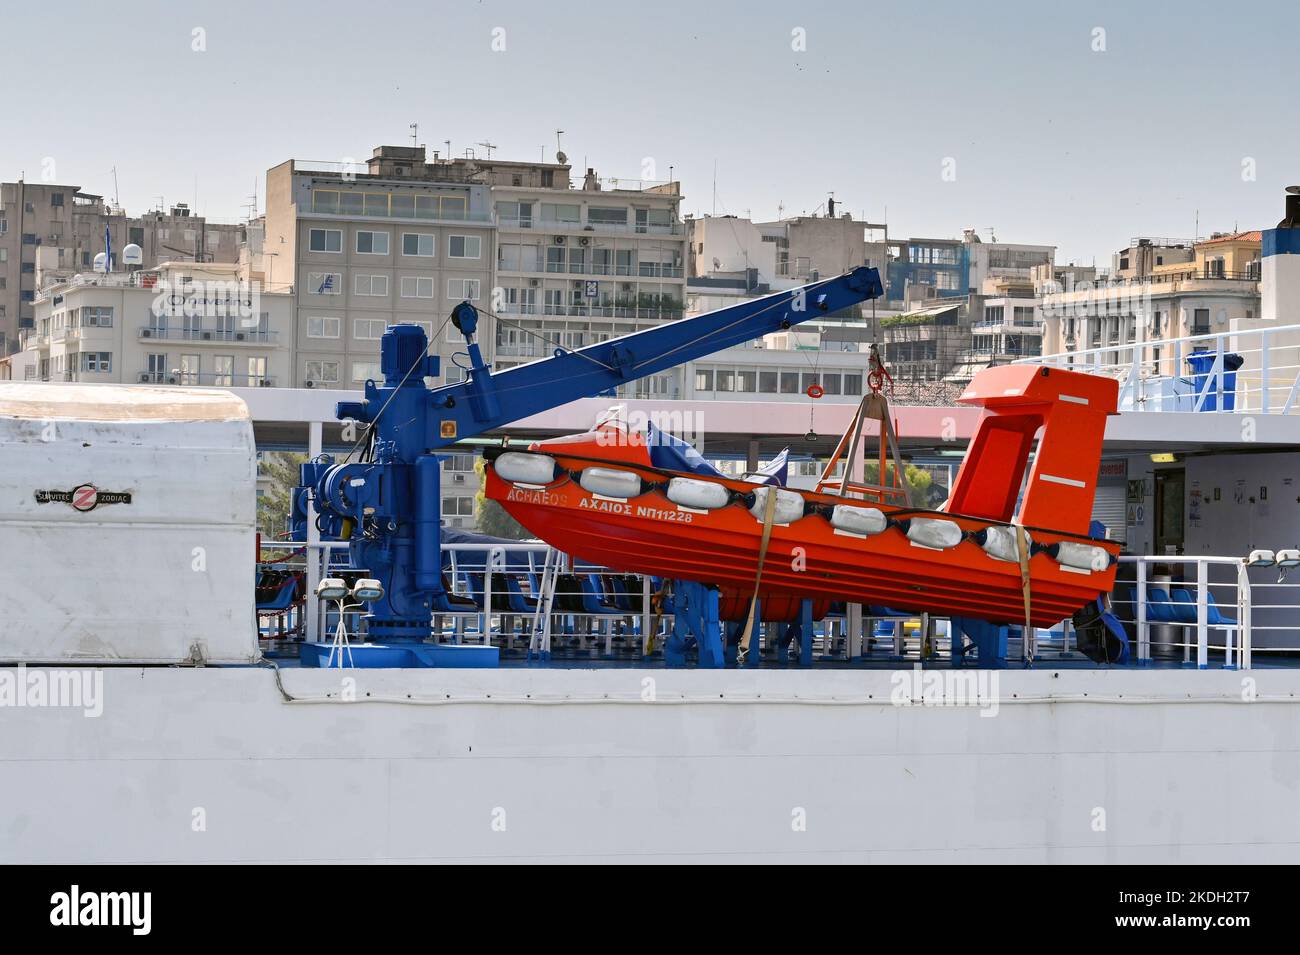 Piräus, Athen, Griechenland - 2022. Juni: Schnellboot zur Rettung, das auf einem Kran auf der Seite einer großen Fähre gelagert wurde Stockfoto